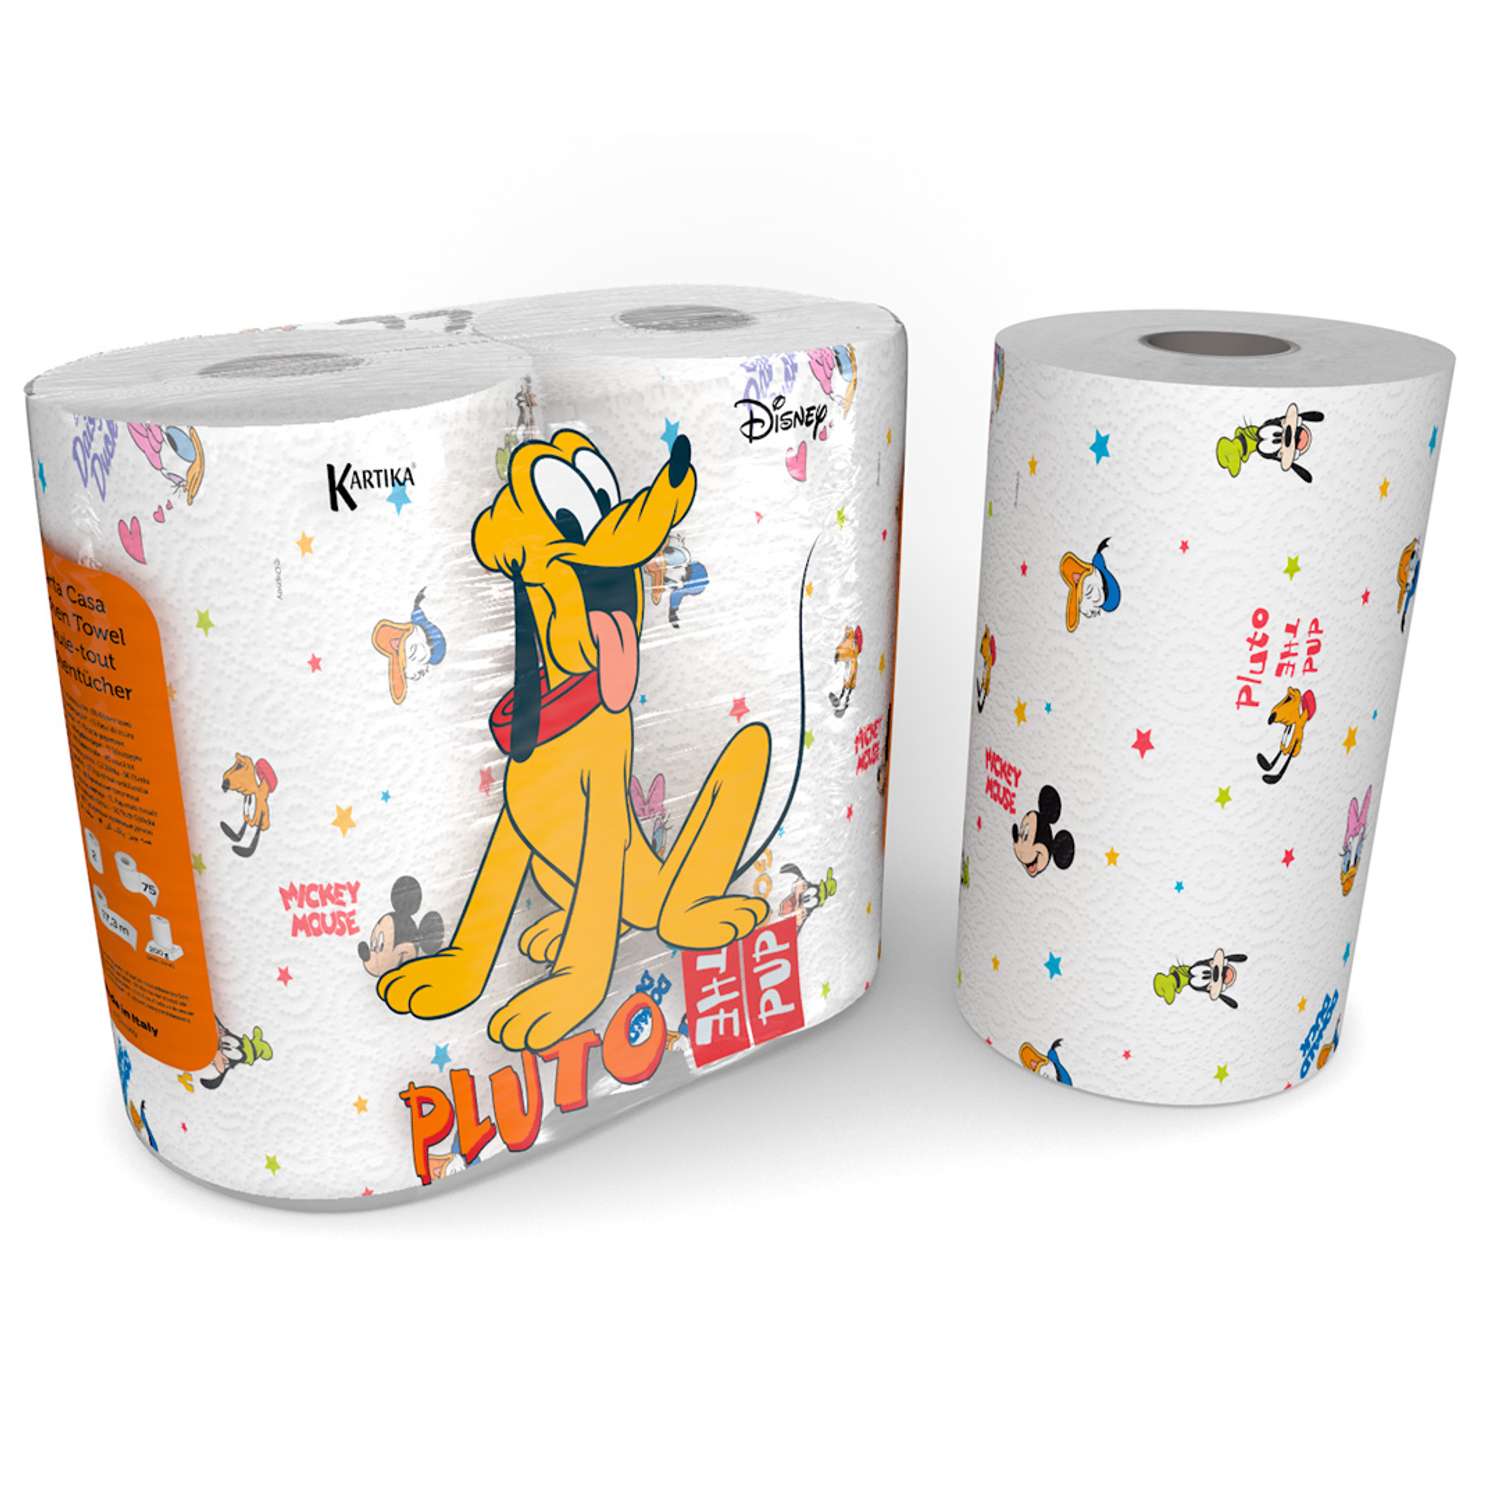 Полотенца бумажные World cart Pluto серия Disney 3 сл 2 рулона по 75 листов - фото 1